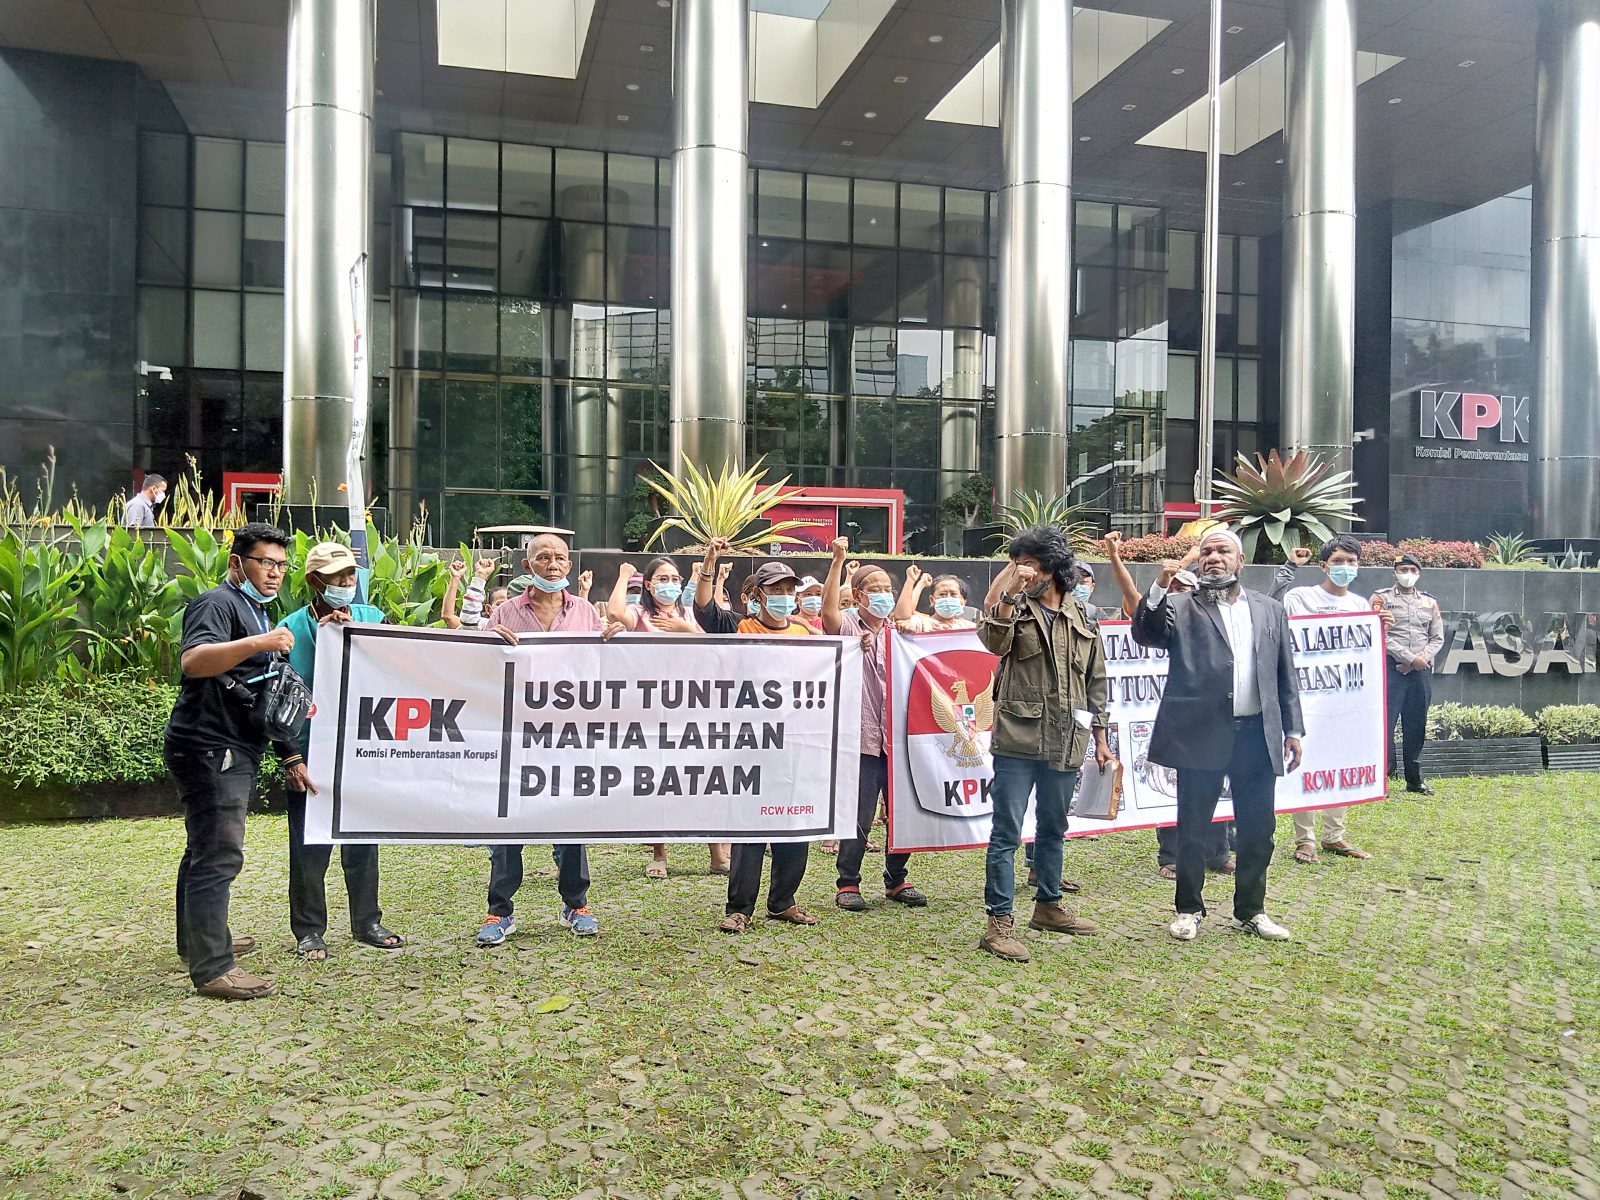 Riau Corruption Watch laporkan Mafia Lahan di BP Batam ke KPK 